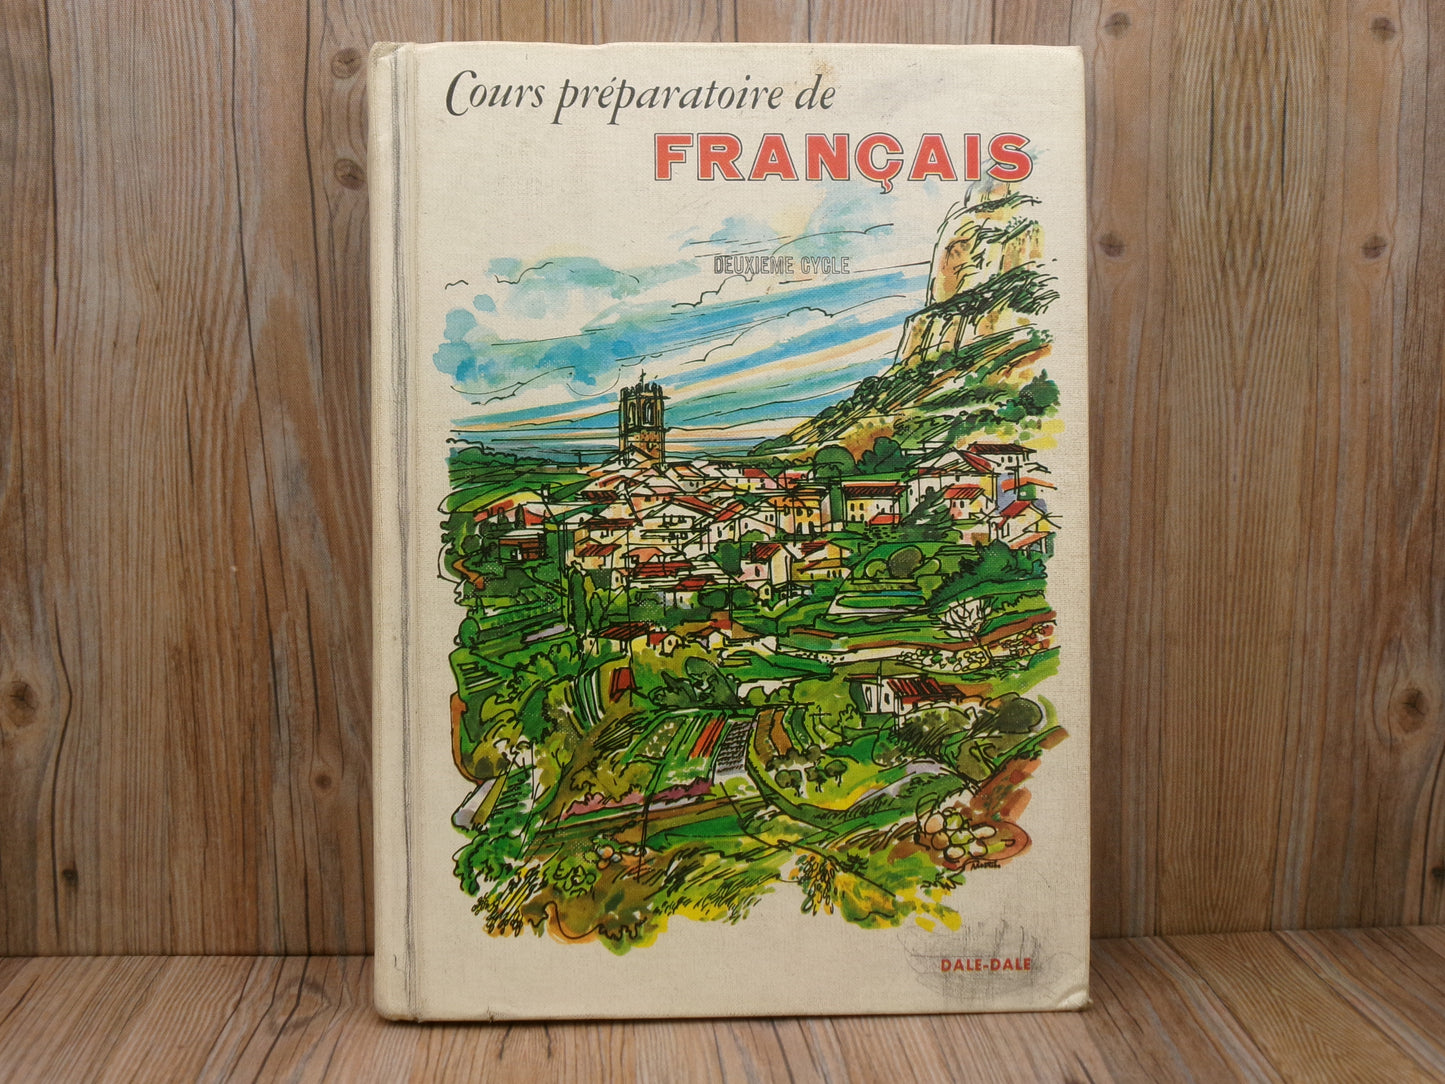 Cours Preparatoire de Francais: Deuxieme Cycle by John B. Dale